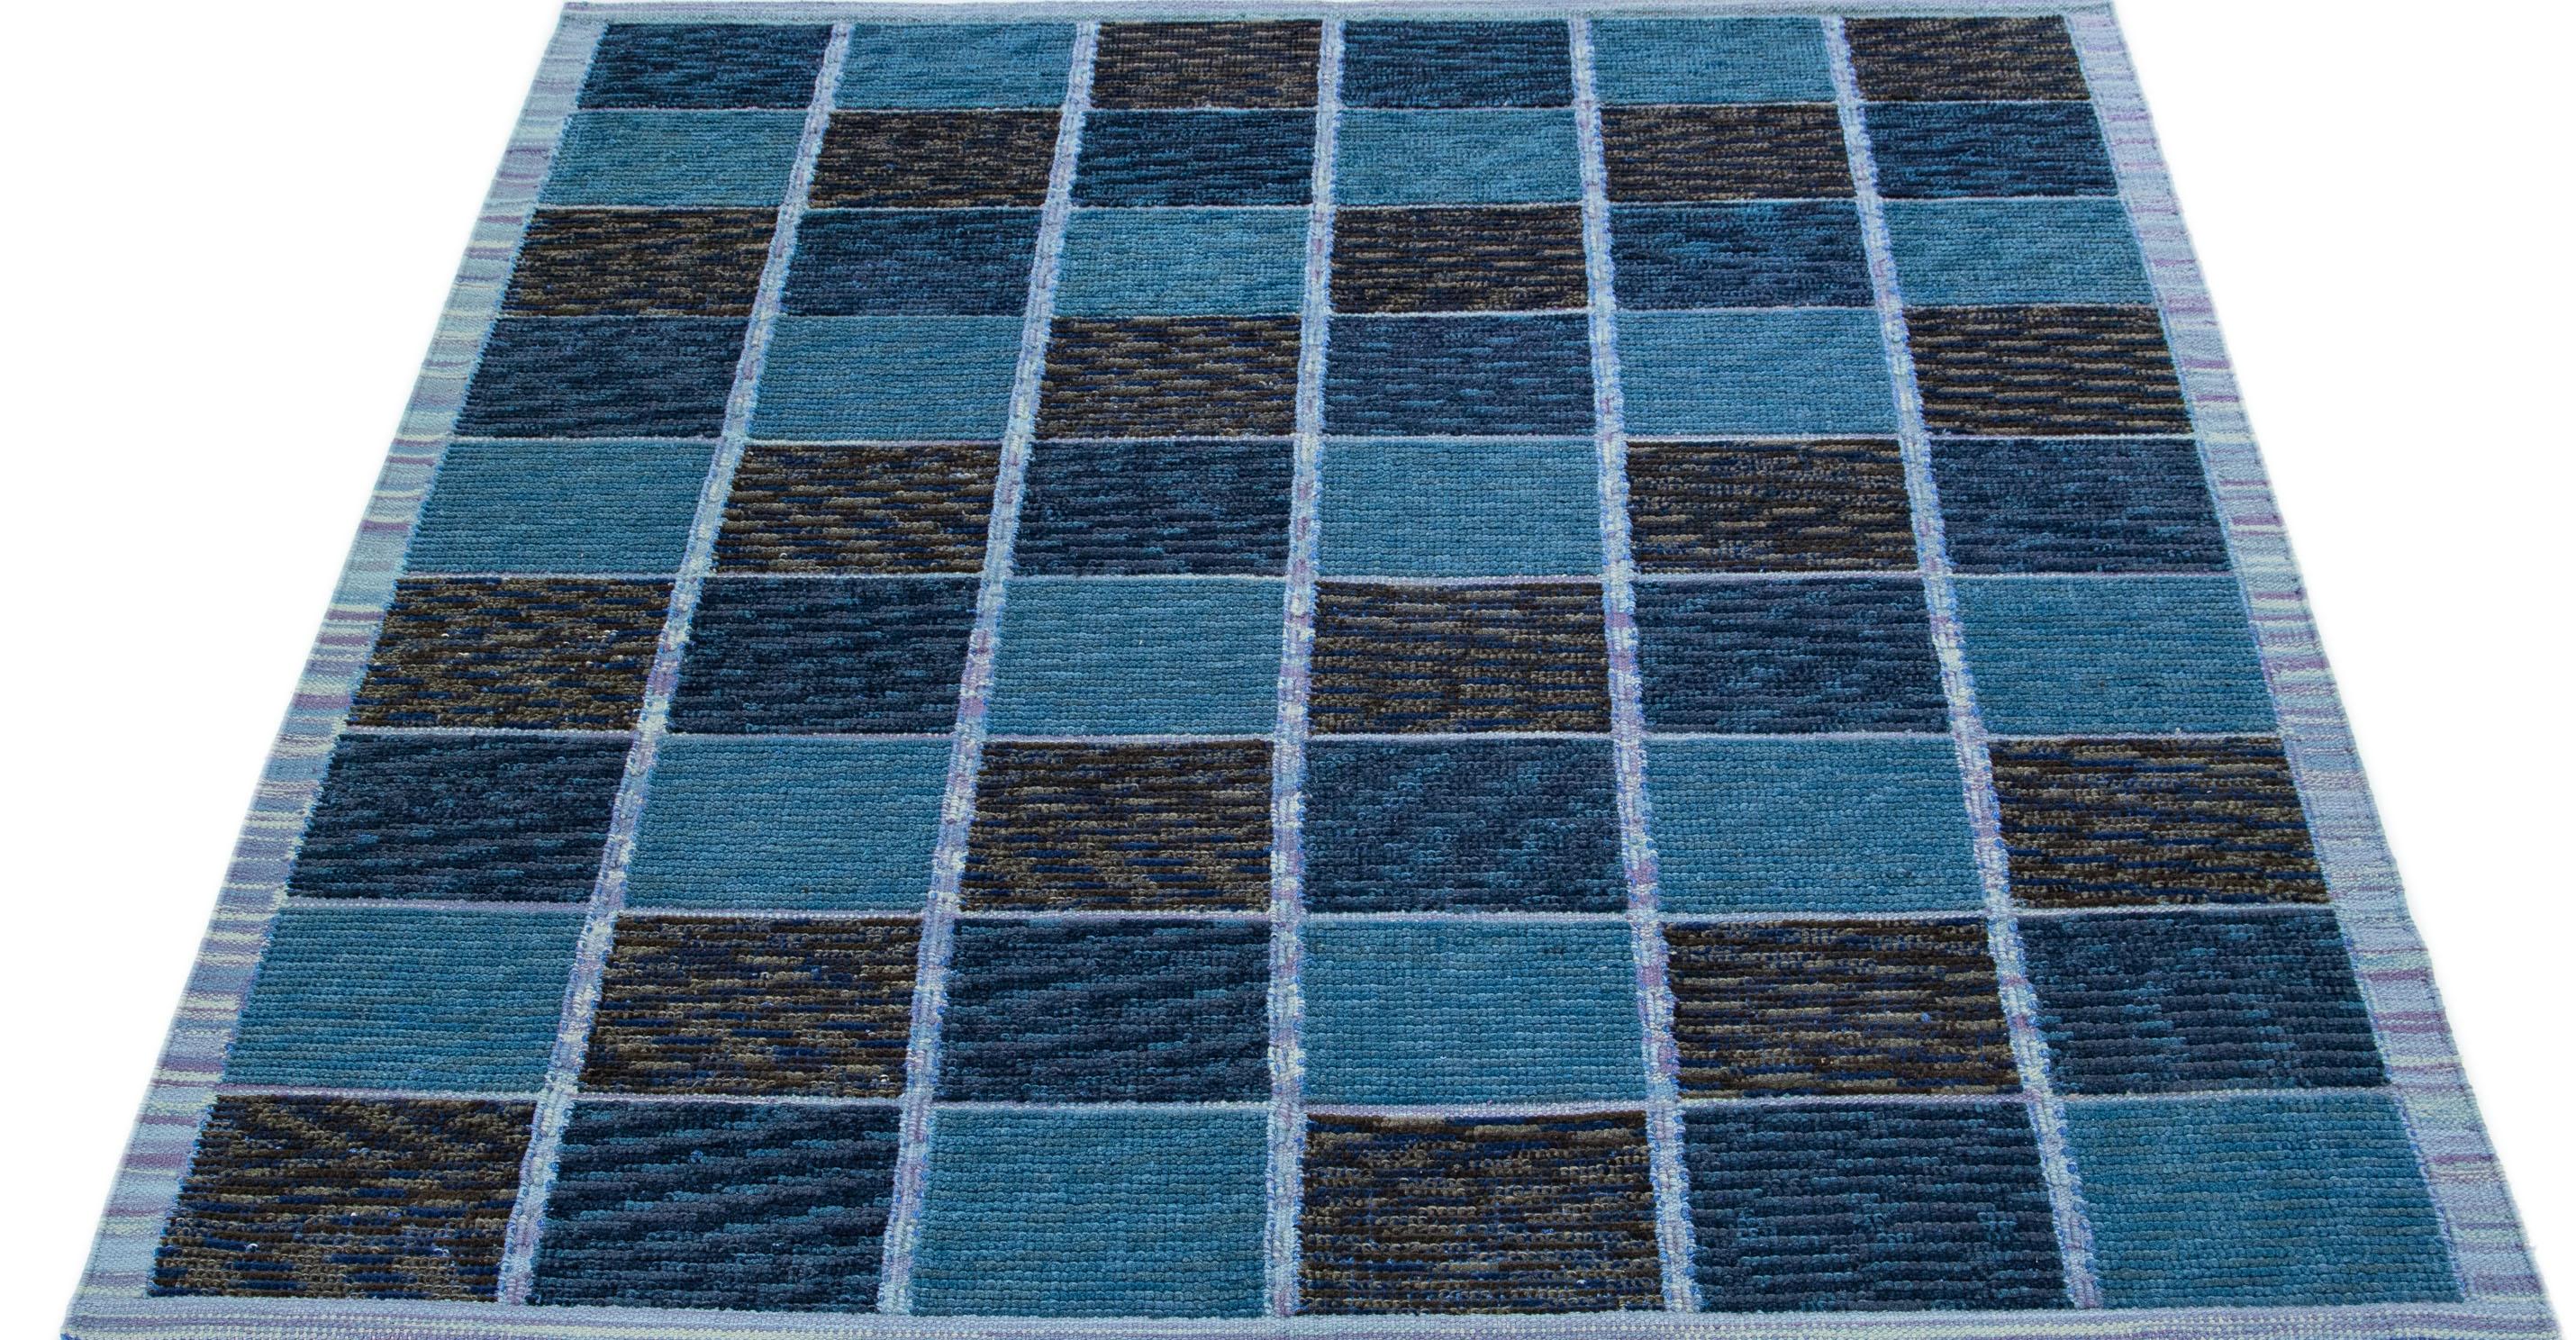 Dieser atemberaubende Wollteppich besticht durch seine zeitgenössische schwedische Ästhetik mit einem fesselnden blauen Farbfeld. Das sorgfältig gearbeitete Karomuster umhüllt den Teppich und verleiht ihm ein wunderschönes Gesamtbild.

 Dieser